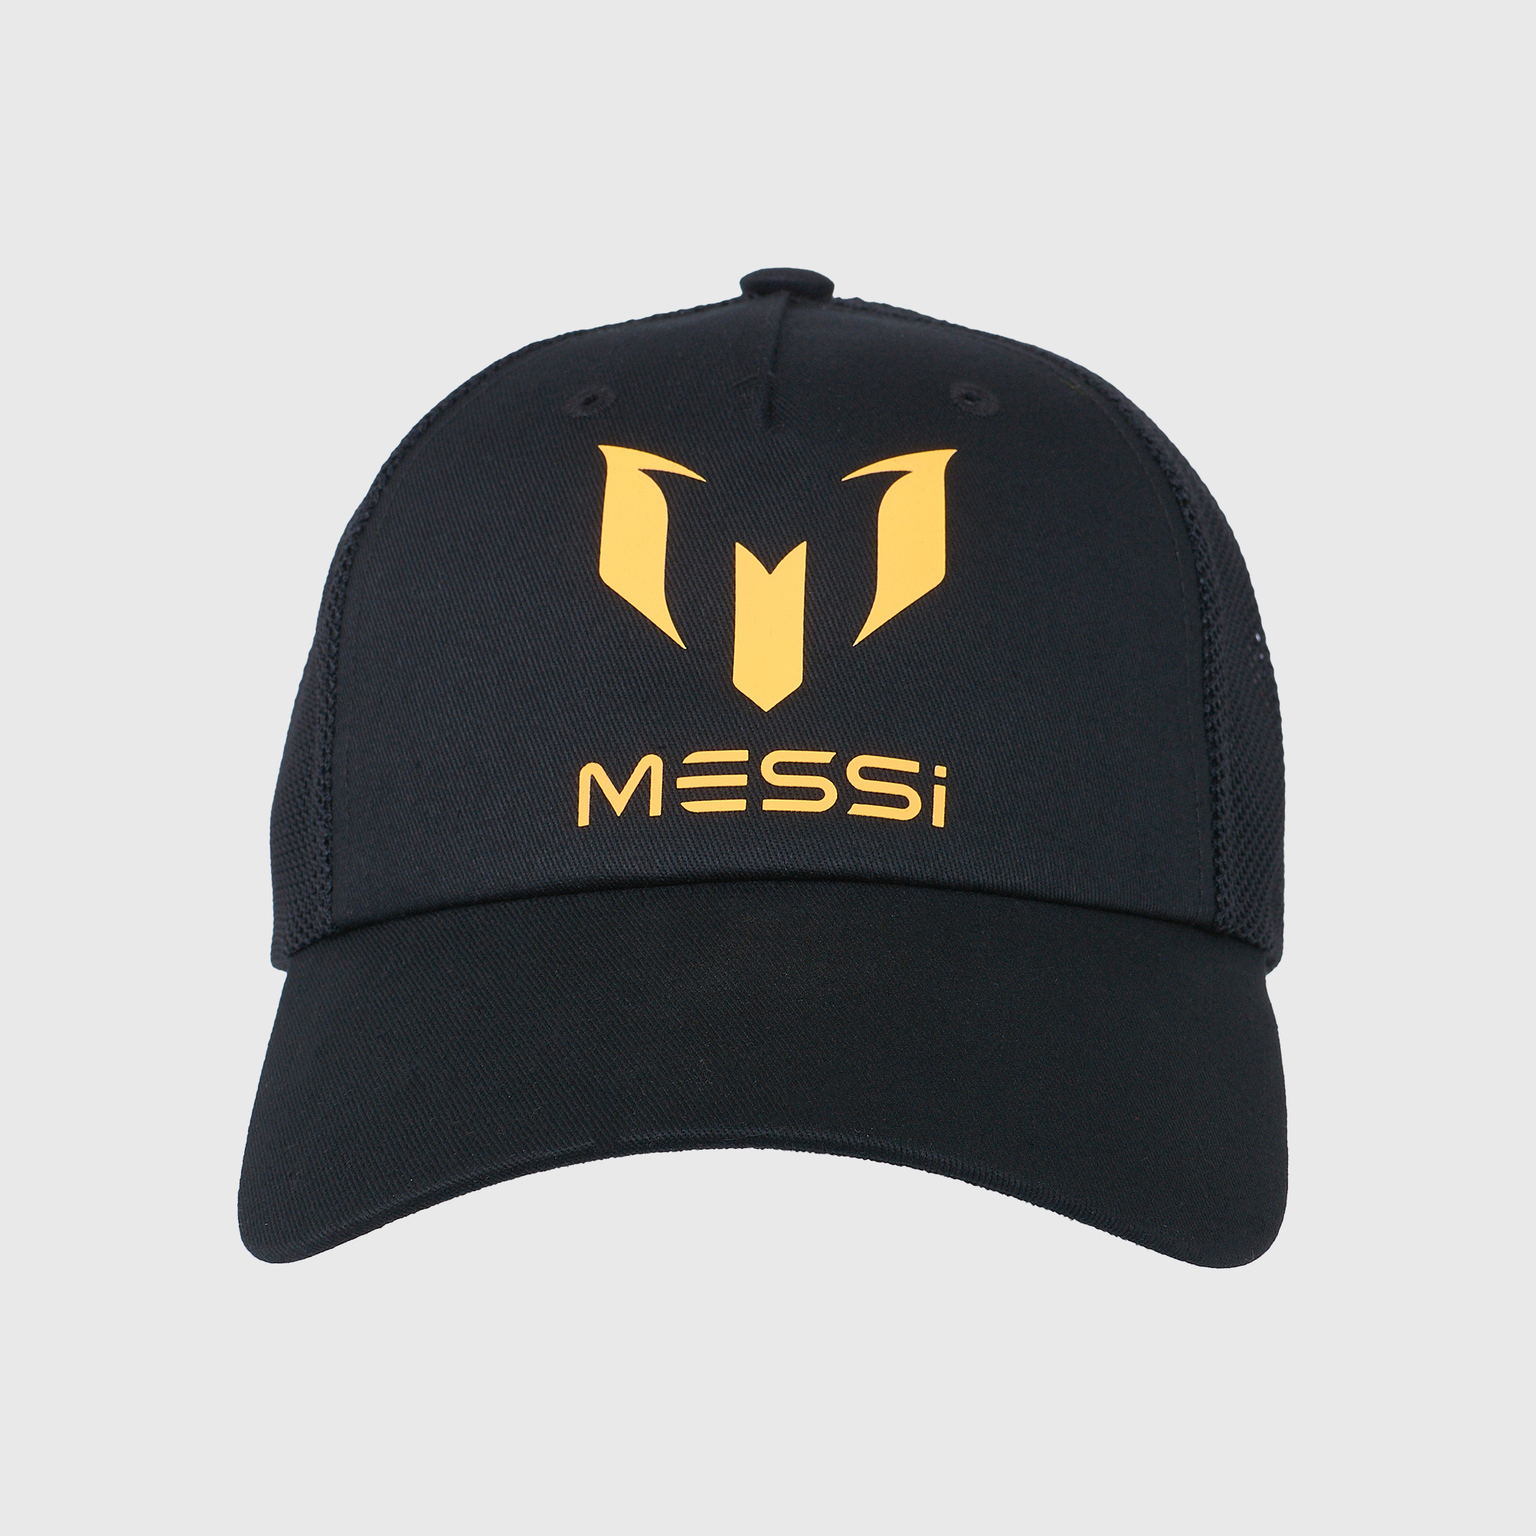 Бейсболка детская Adidas Messi Cap HE2956